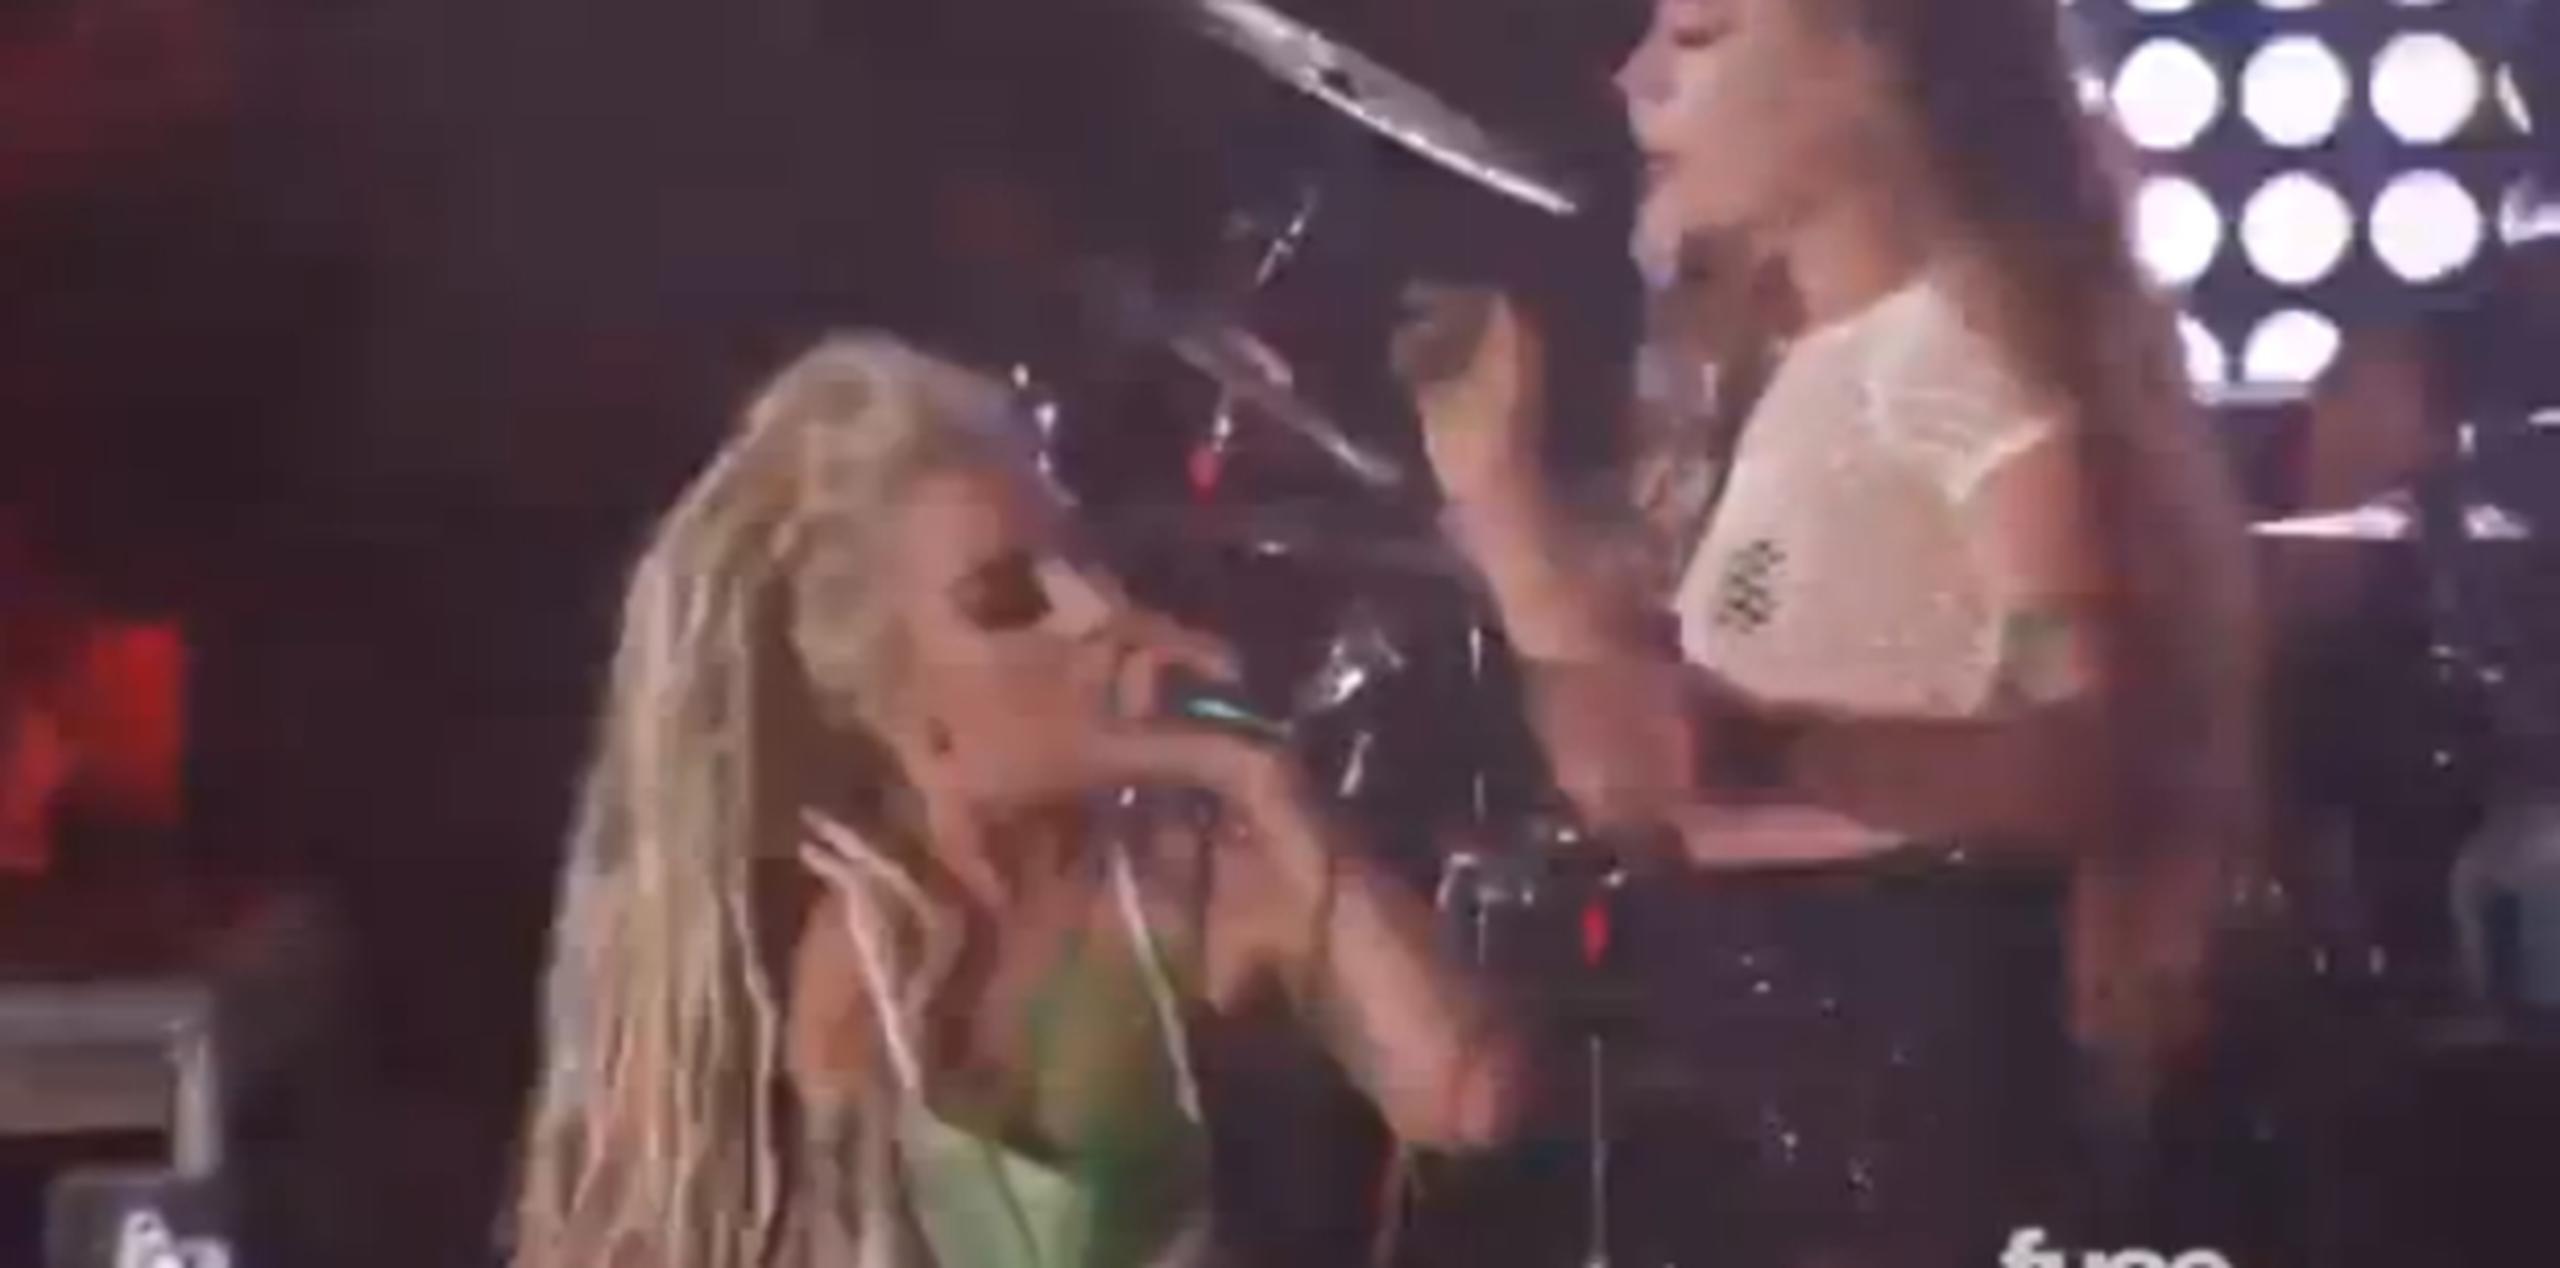 Se acerca a Lady Gaga y con los dedos se provoca el vómito sobre la cantante, expulsando un líquido verde. (You Tube)